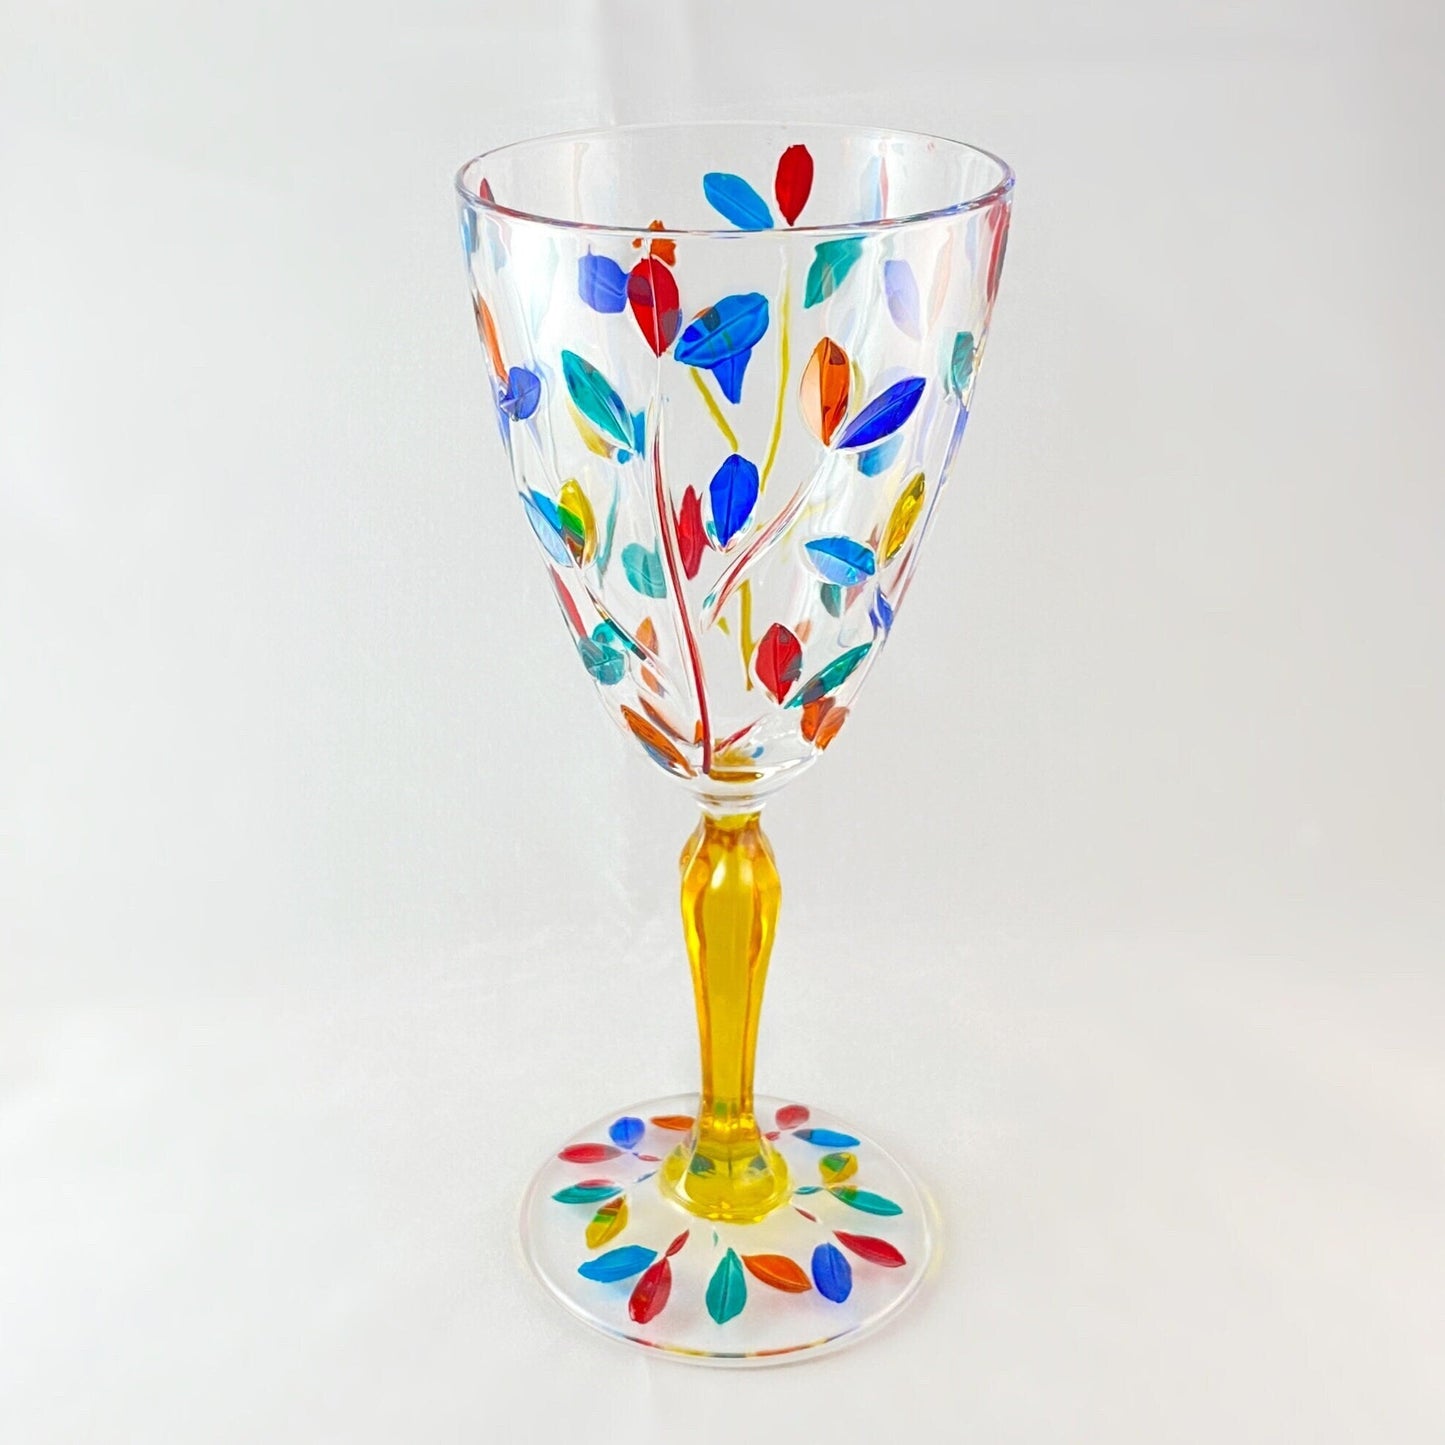 Yellow Stem Tree of Life Venetian Glass Wine Glass - Handmade in Italy, Colorful Murano Glass